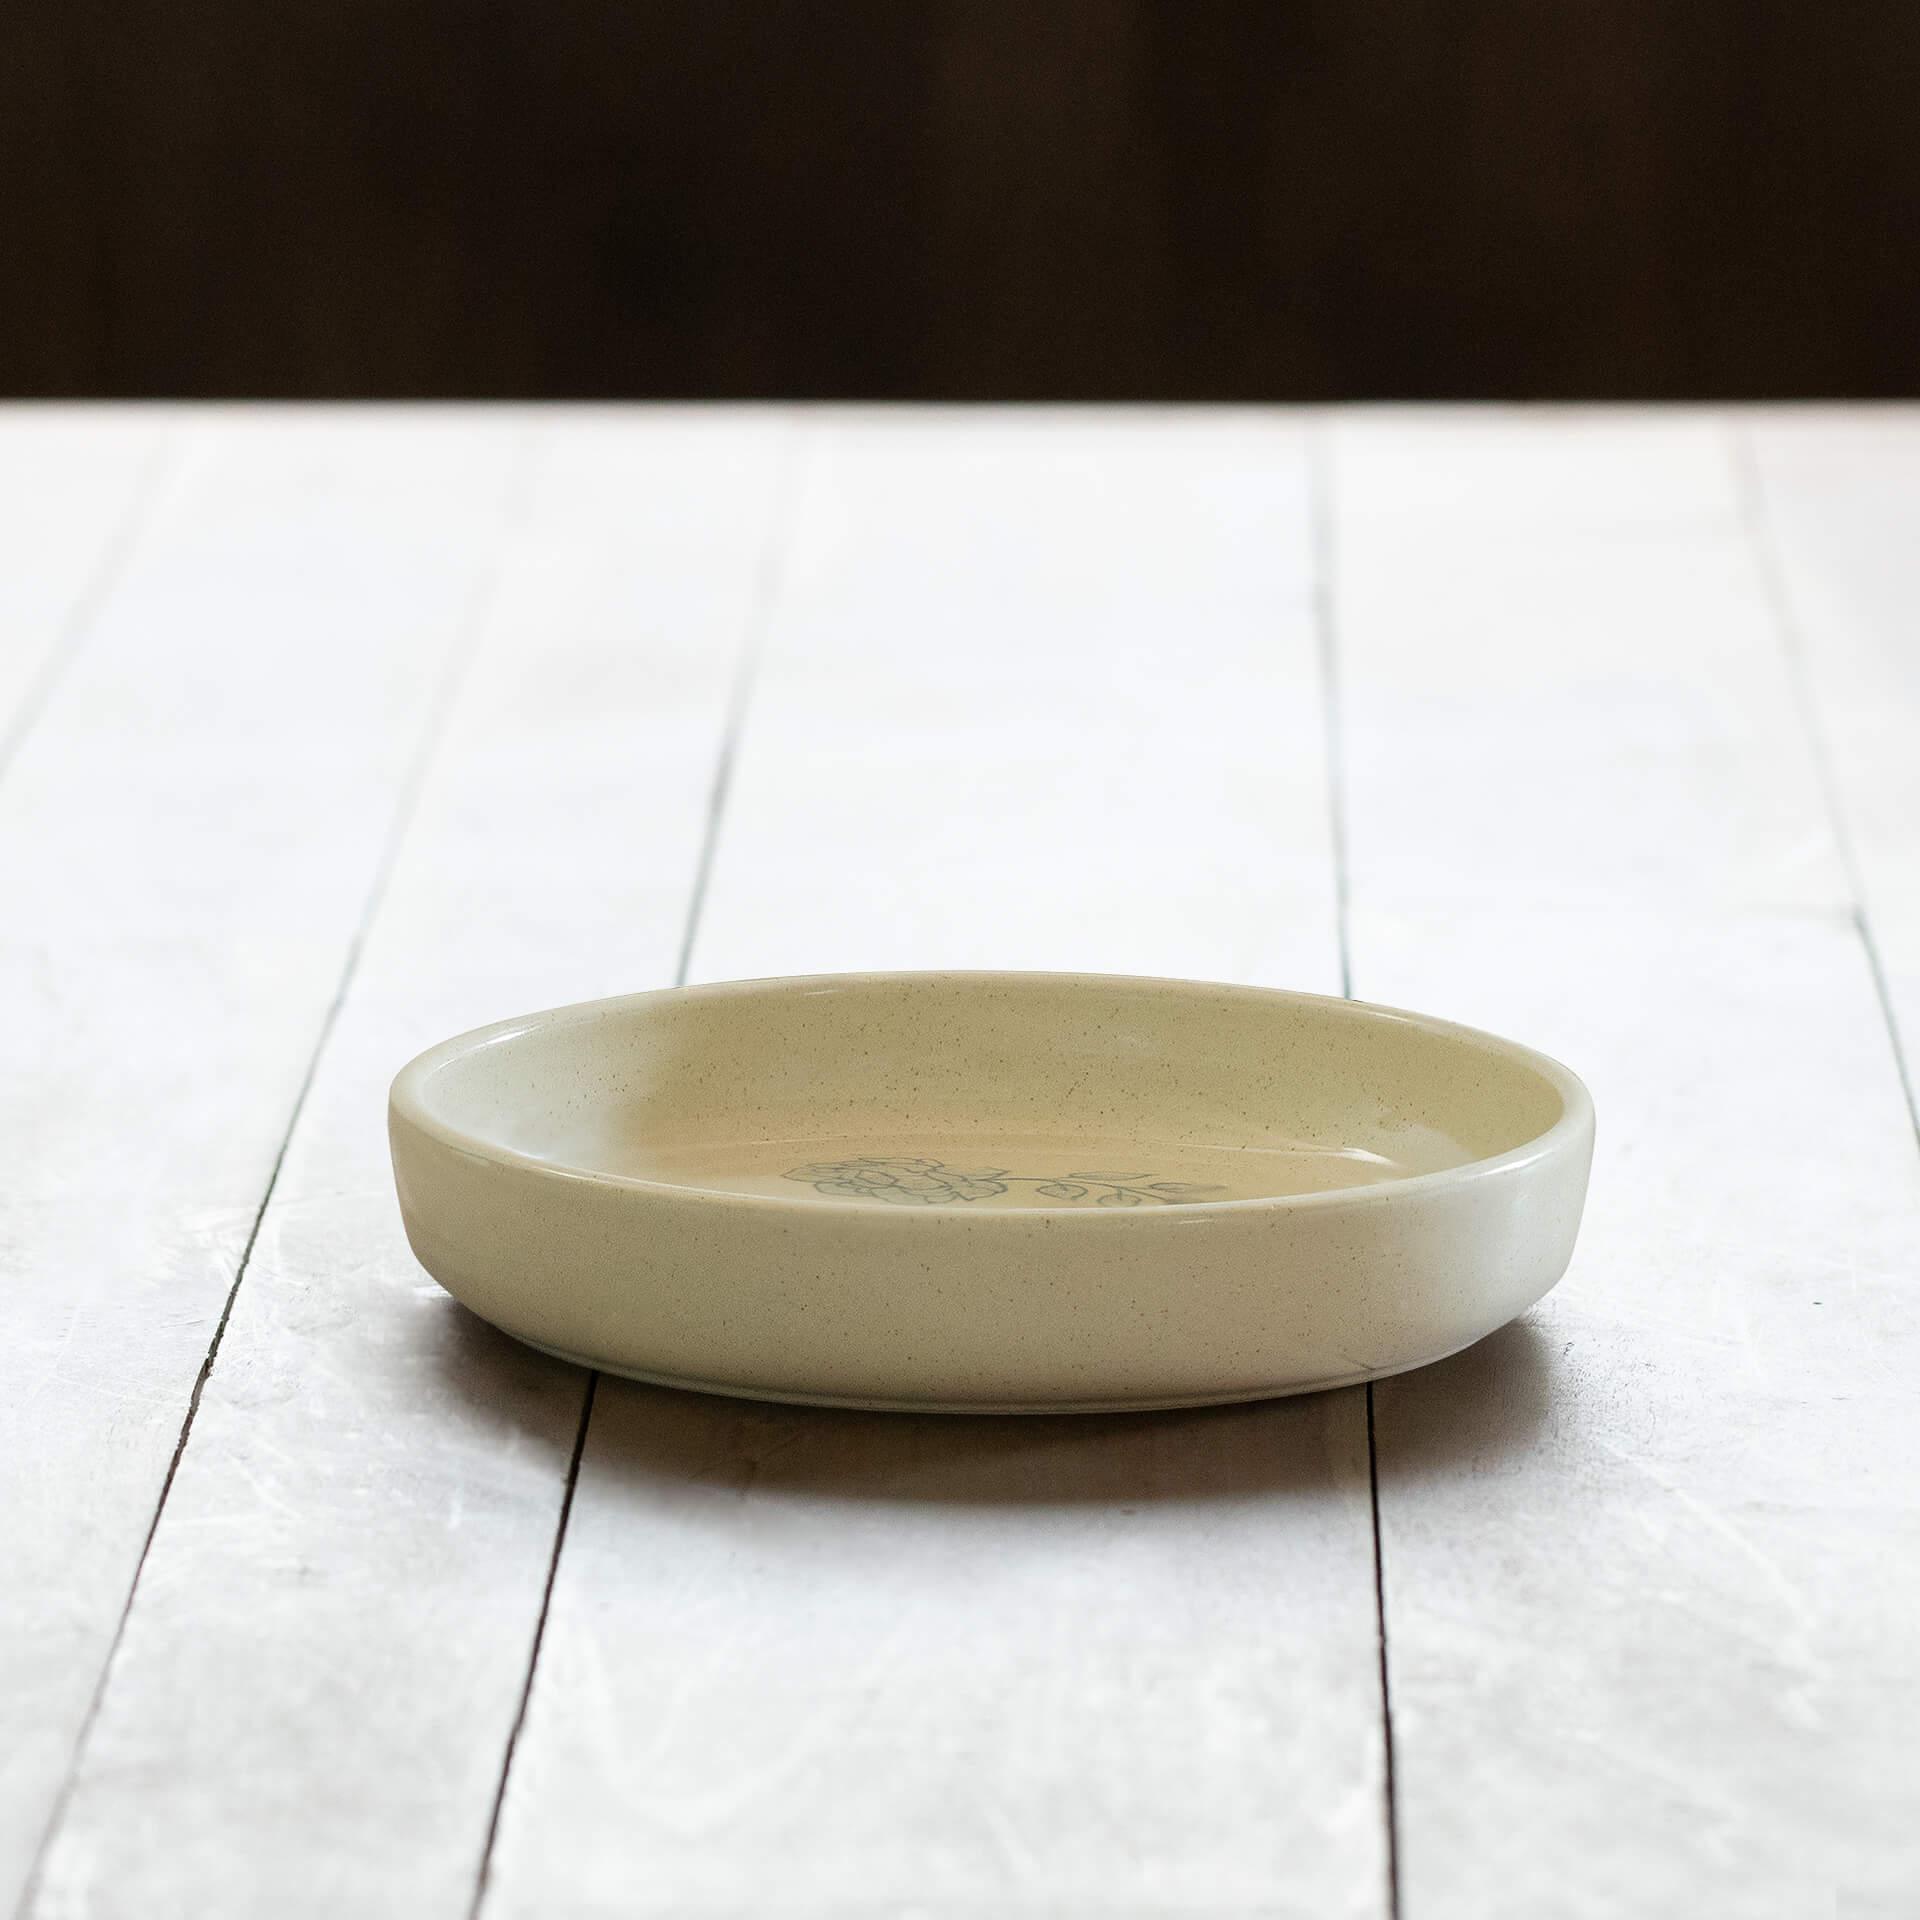 Fiore Ceramic Pasta Bowl